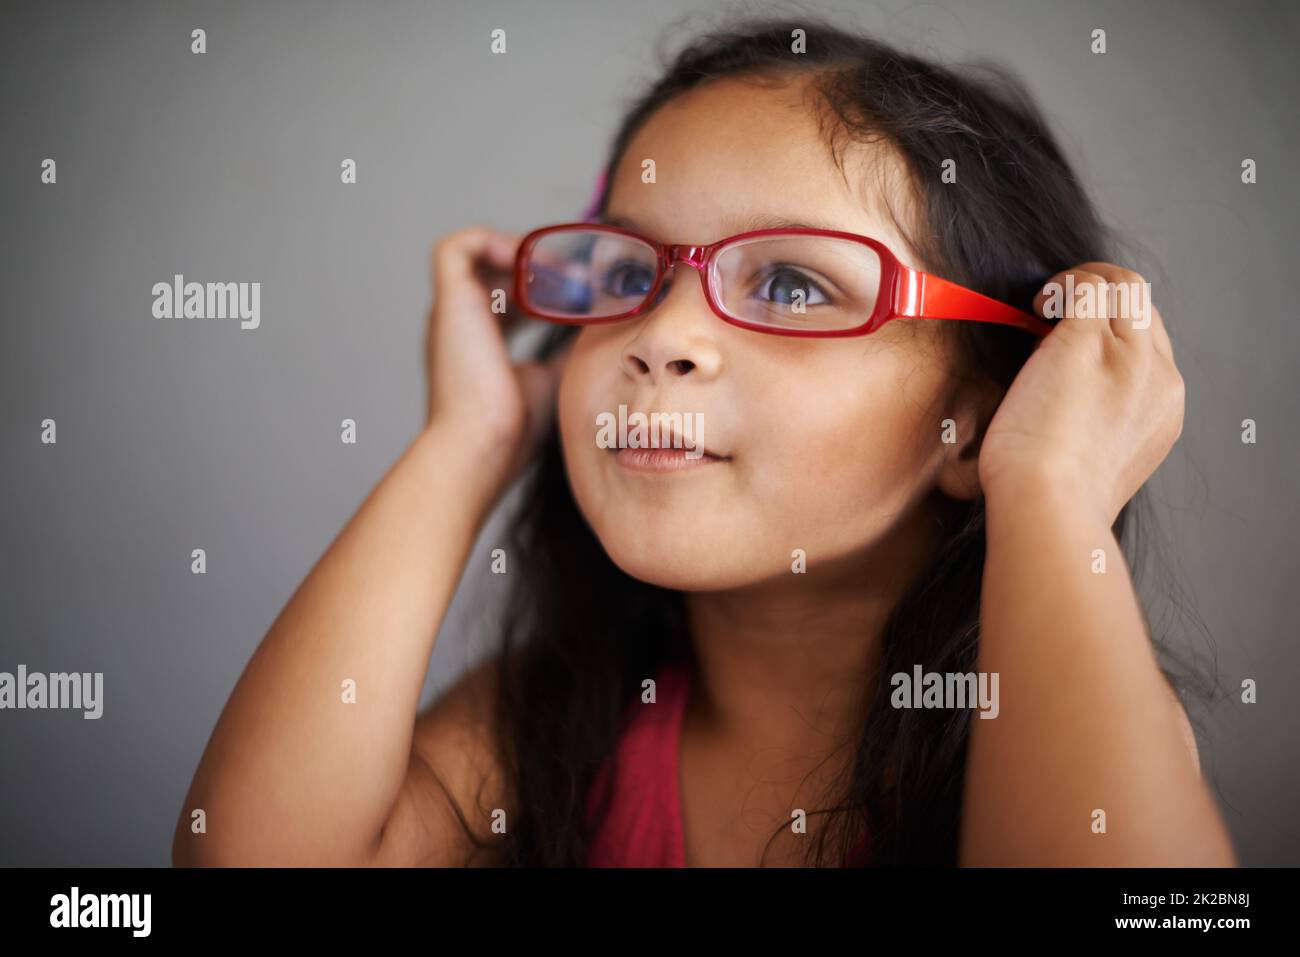 Ich glaube, sie passen zu mir, nicht Sie. Aufnahme eines niedlichen kleinen Mädchens, das eine Brille für Erwachsene anprobiert. Stockfoto